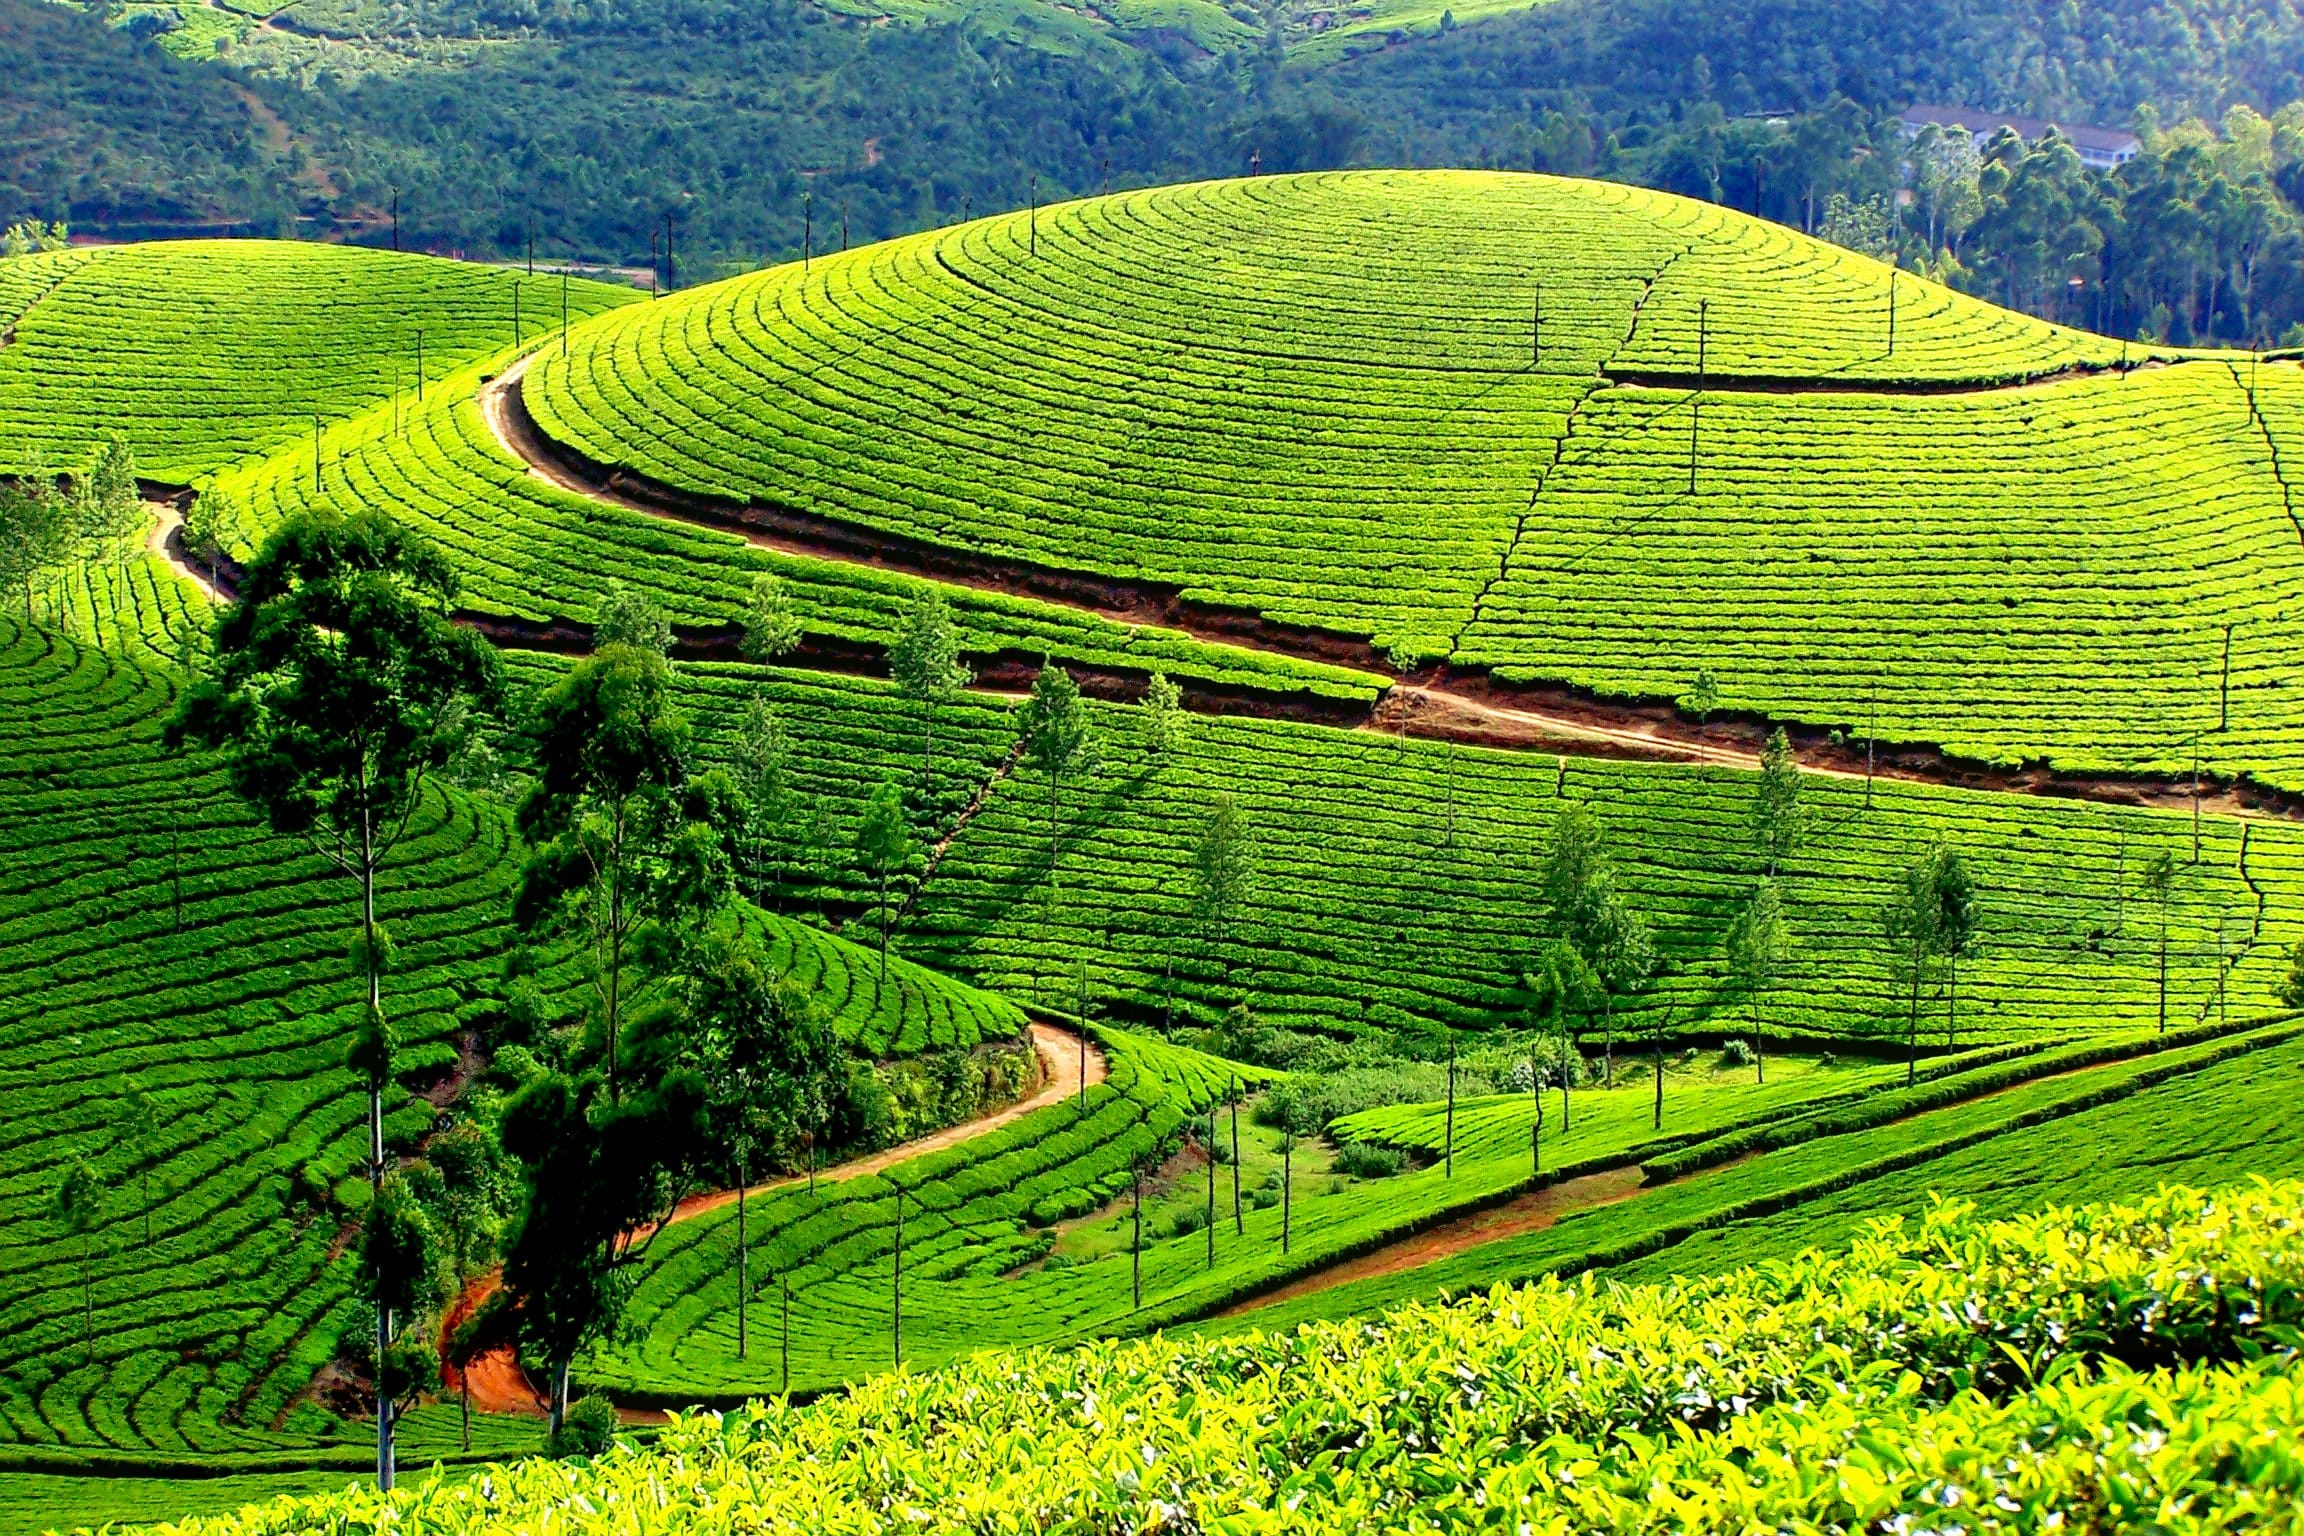 Best of Kerala (Munnar - Periyar - Kumarakom Kovalam)